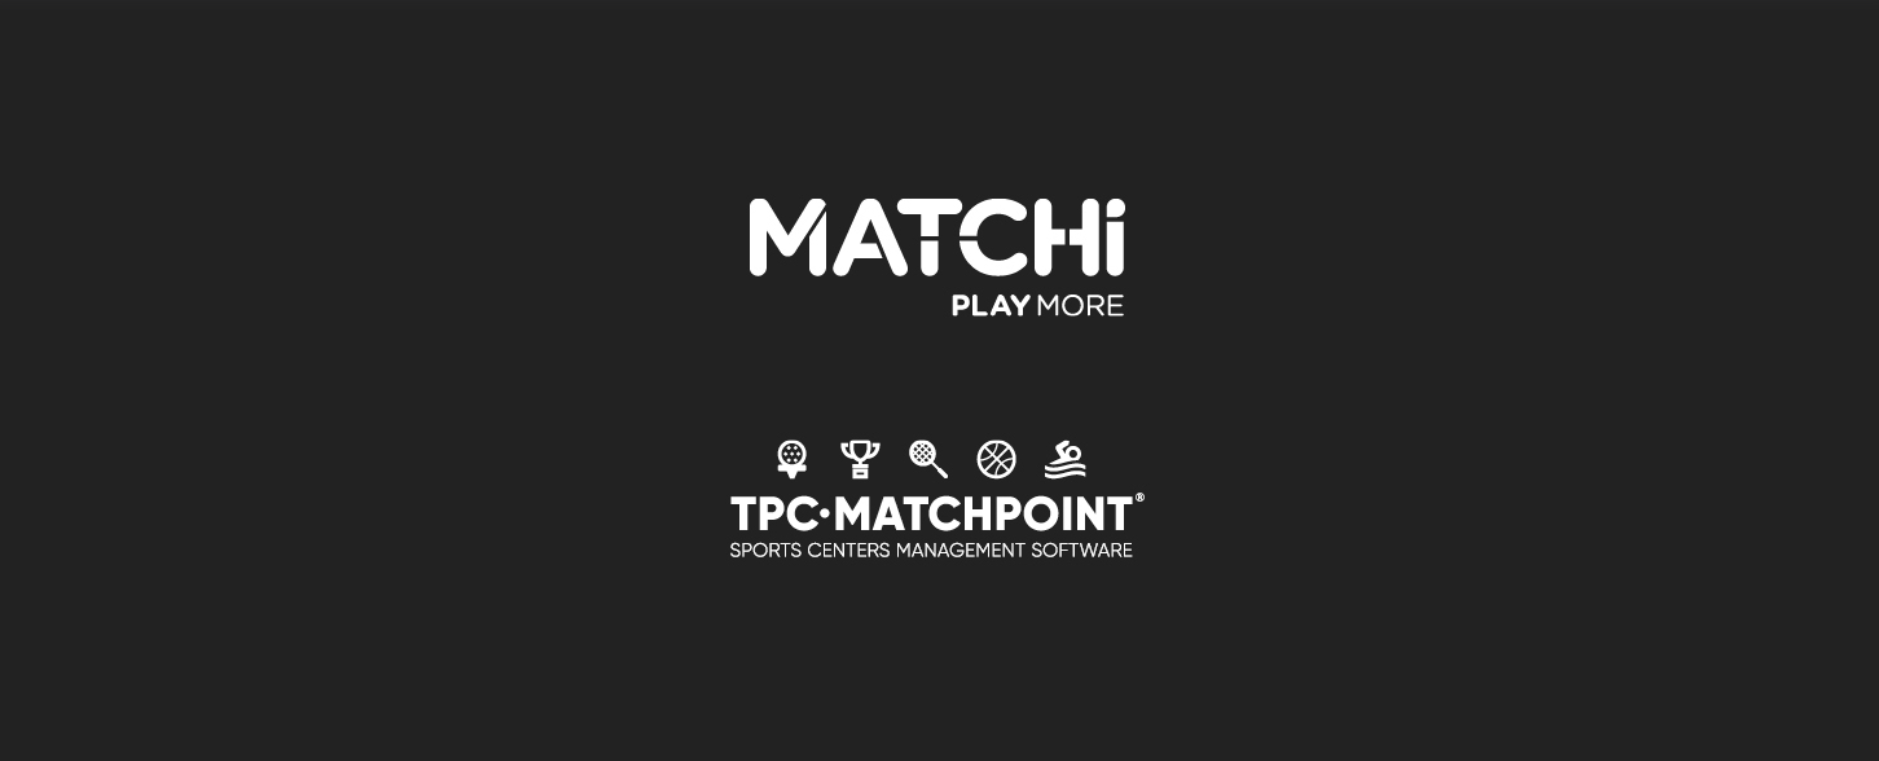 TPC Matchpoint s’associe à MATCHi, créant l’un des plus grands réseaux de sports de raquette au monde !